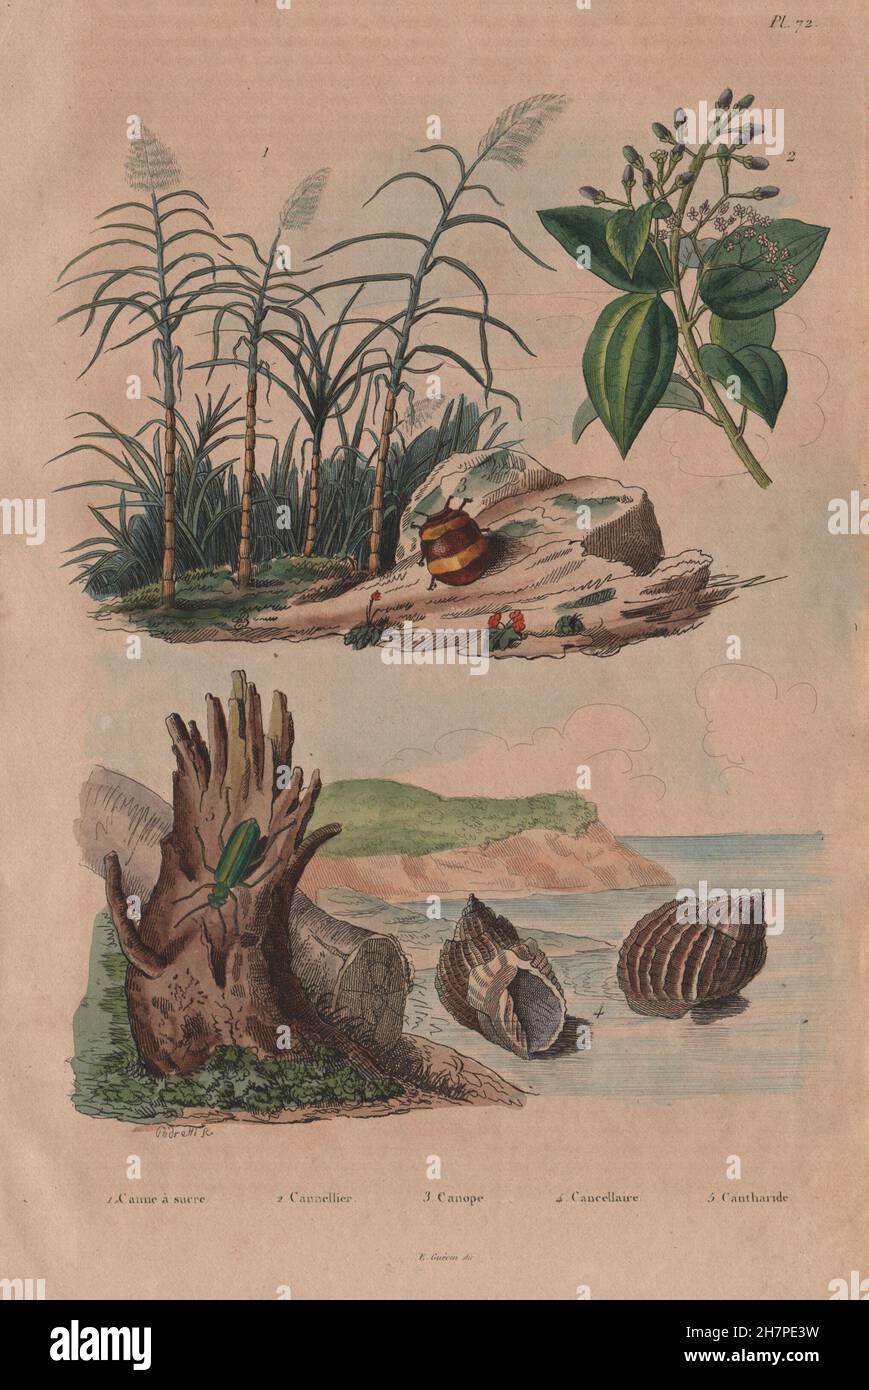 Sugar cane. Cinnamon tree. Canopus. Bivetiella cancellata. Spanish Fly, 1833 Stock Photo